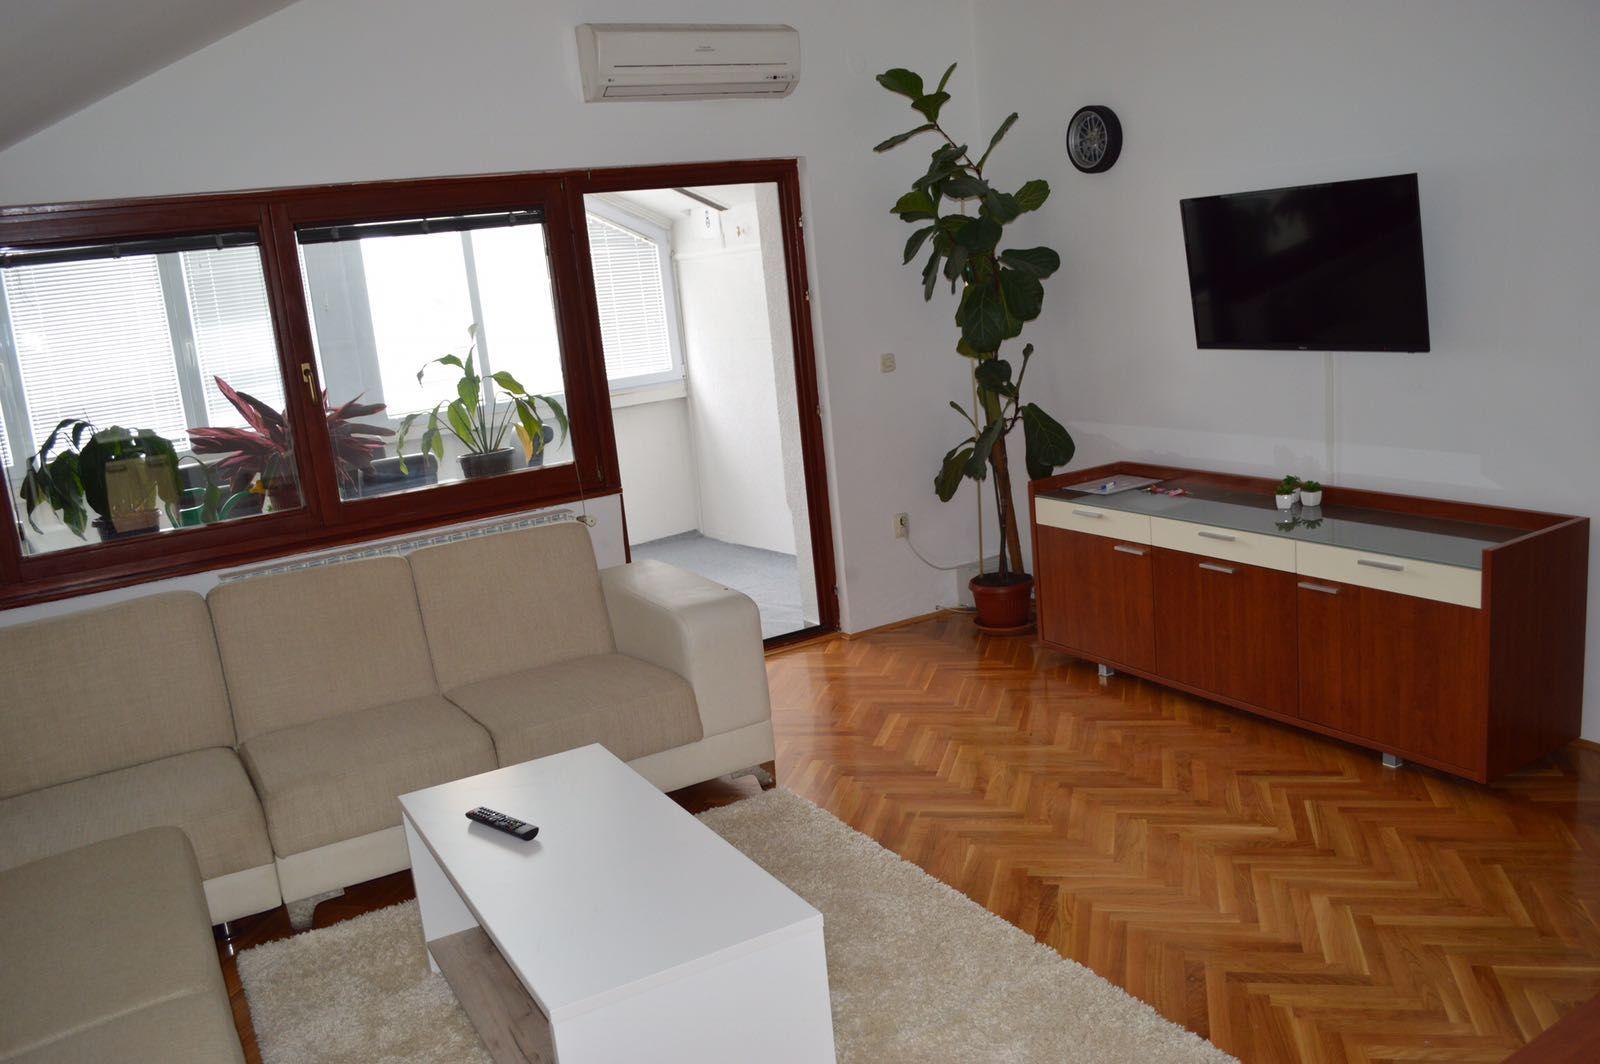 Ferienwohnung für 8 Personen ca. 145 m²  Ferienhaus in Bosnien